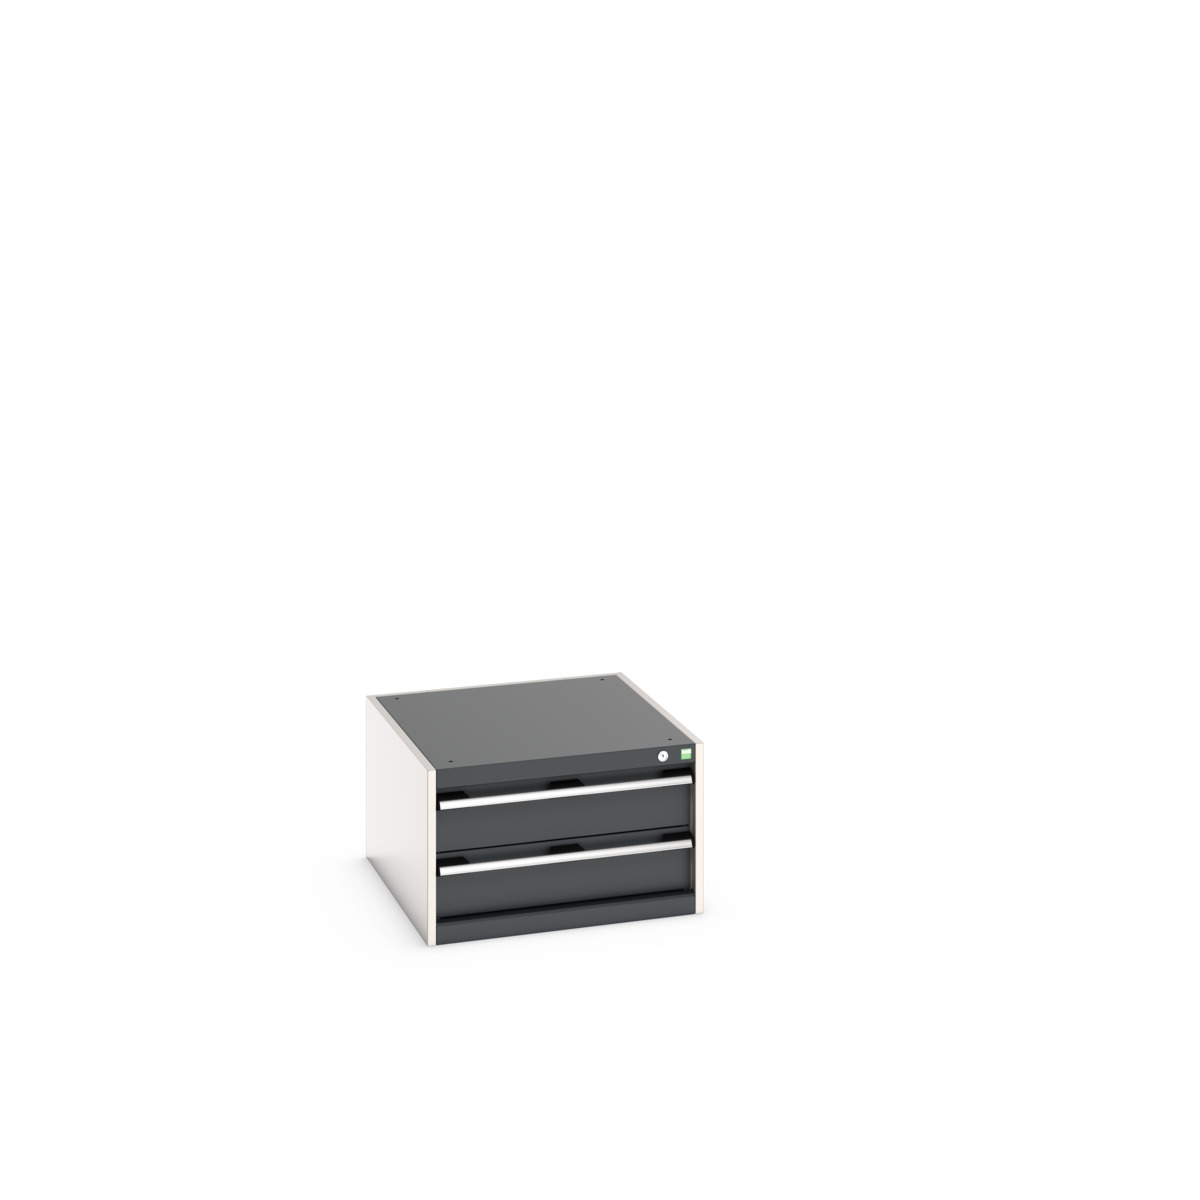 40027108.19V - cubio drawer cabinet